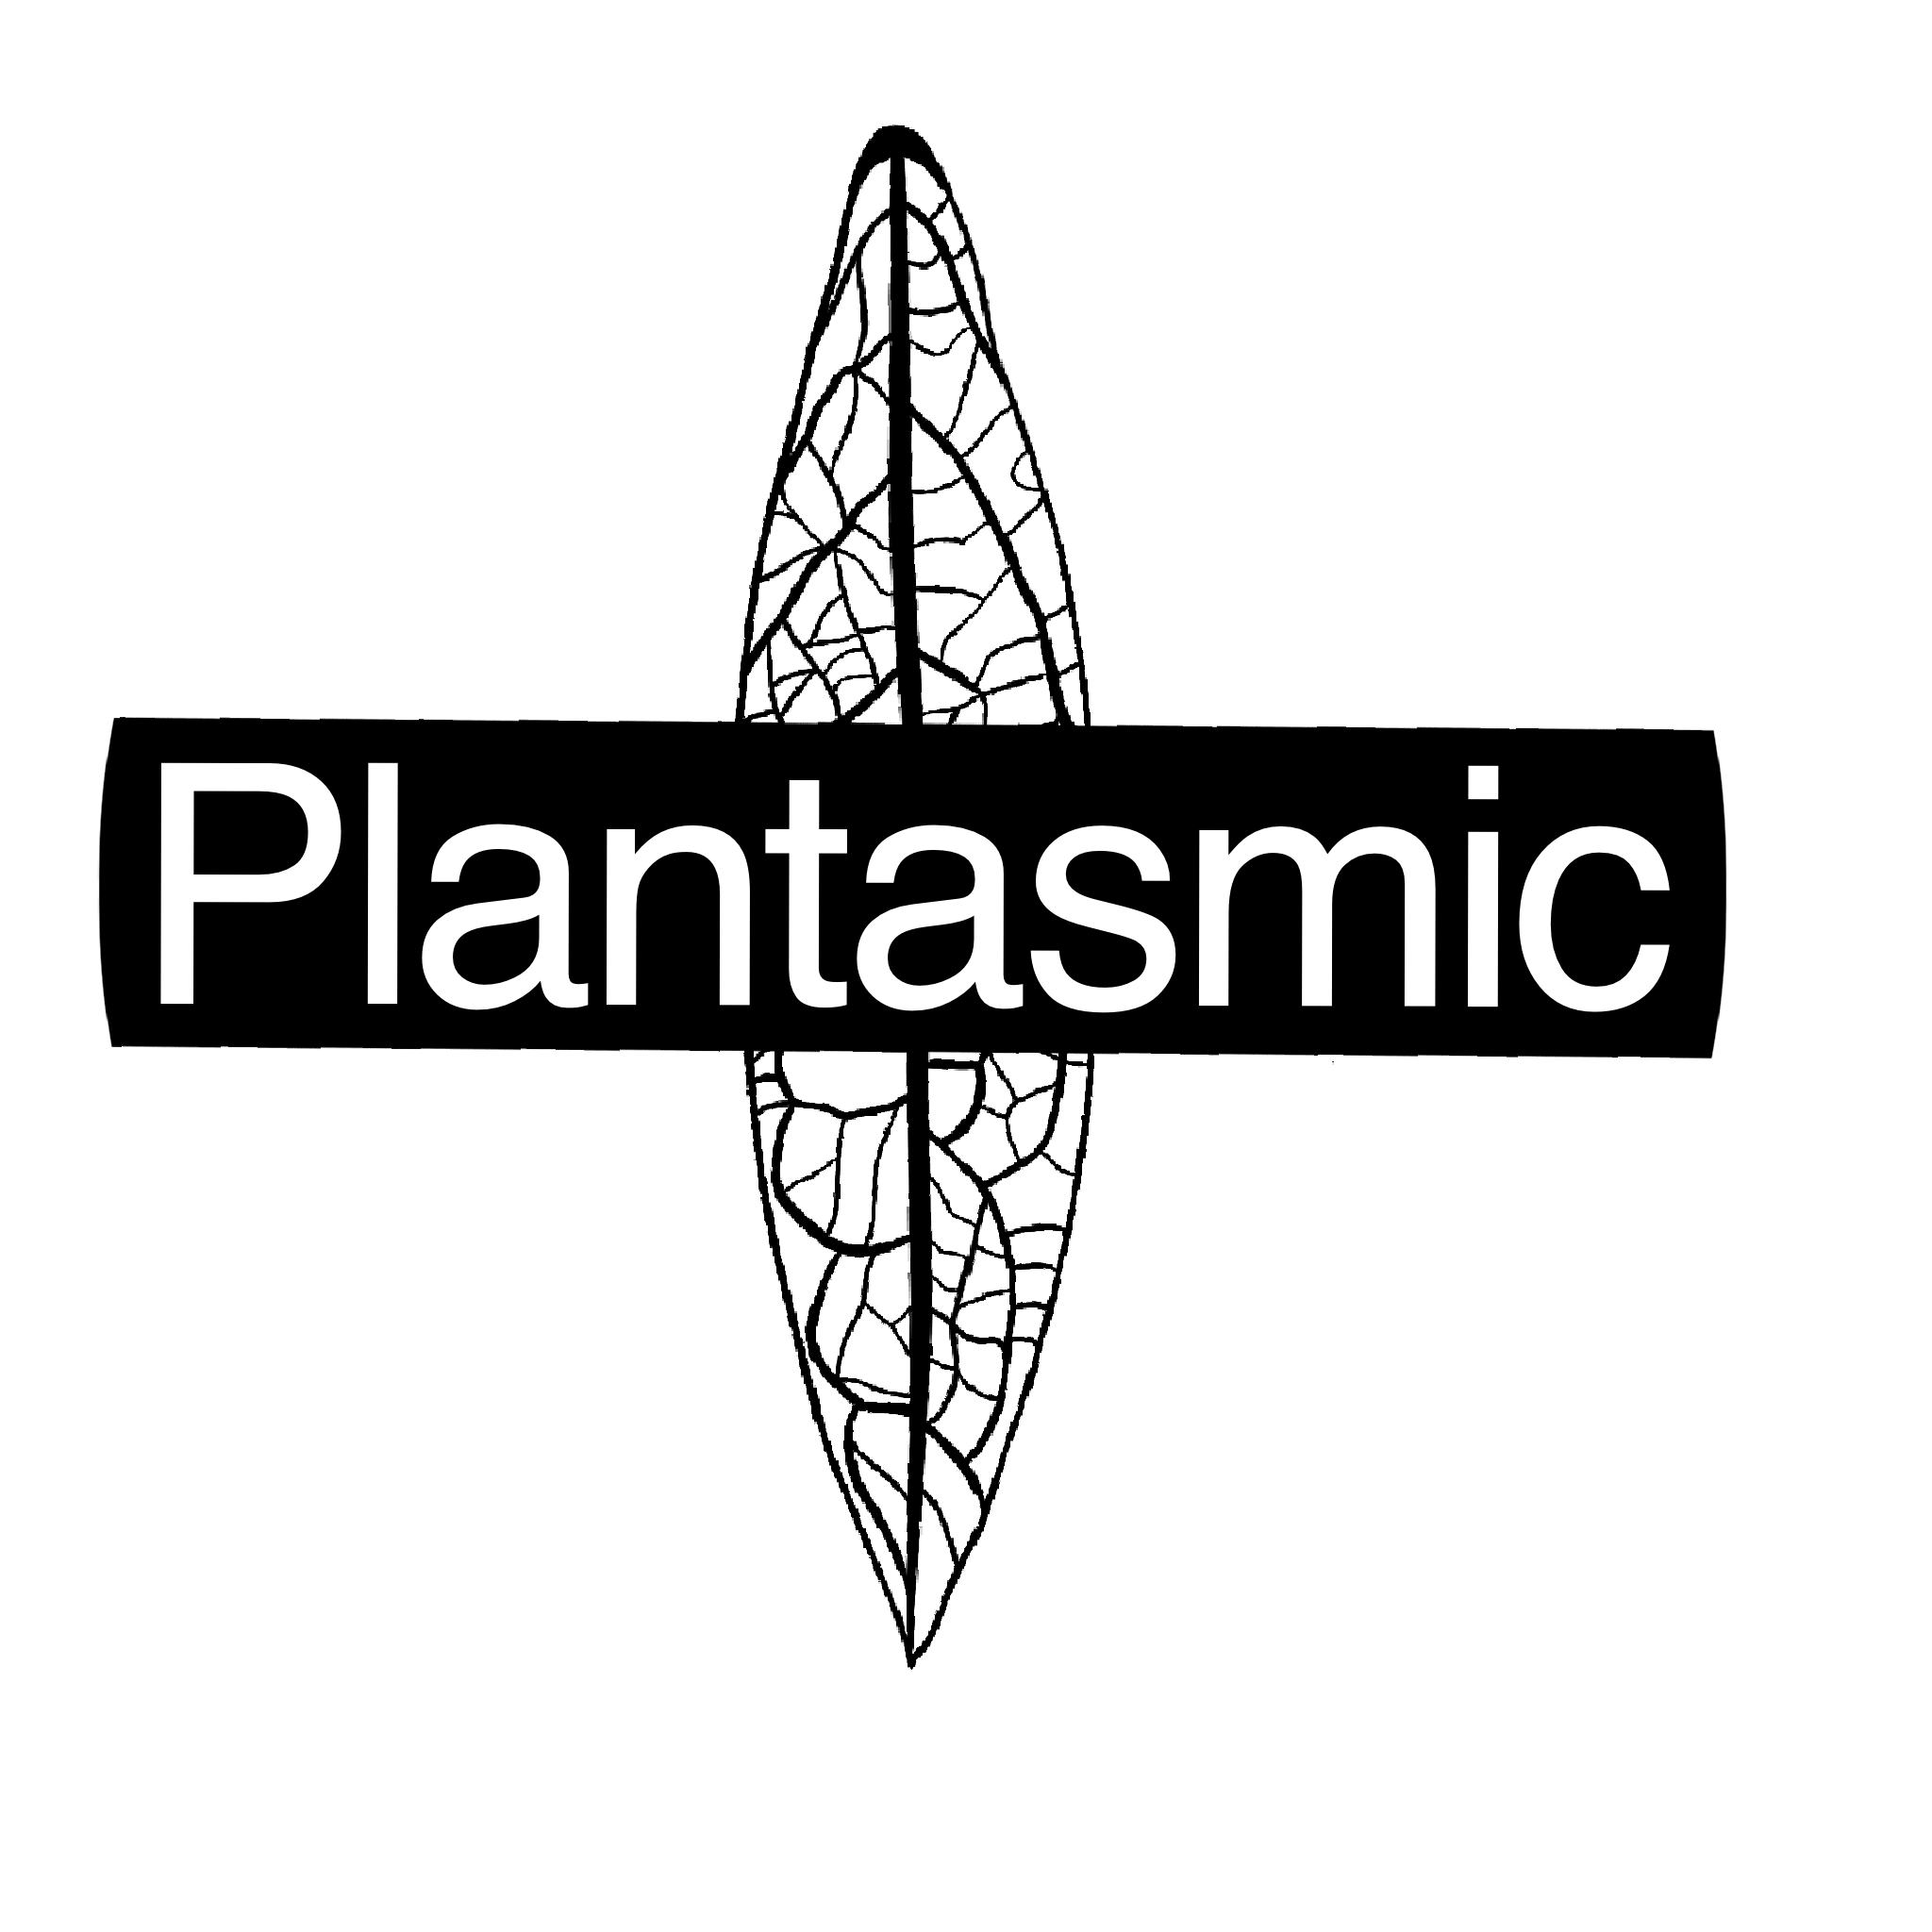 Plantasmic